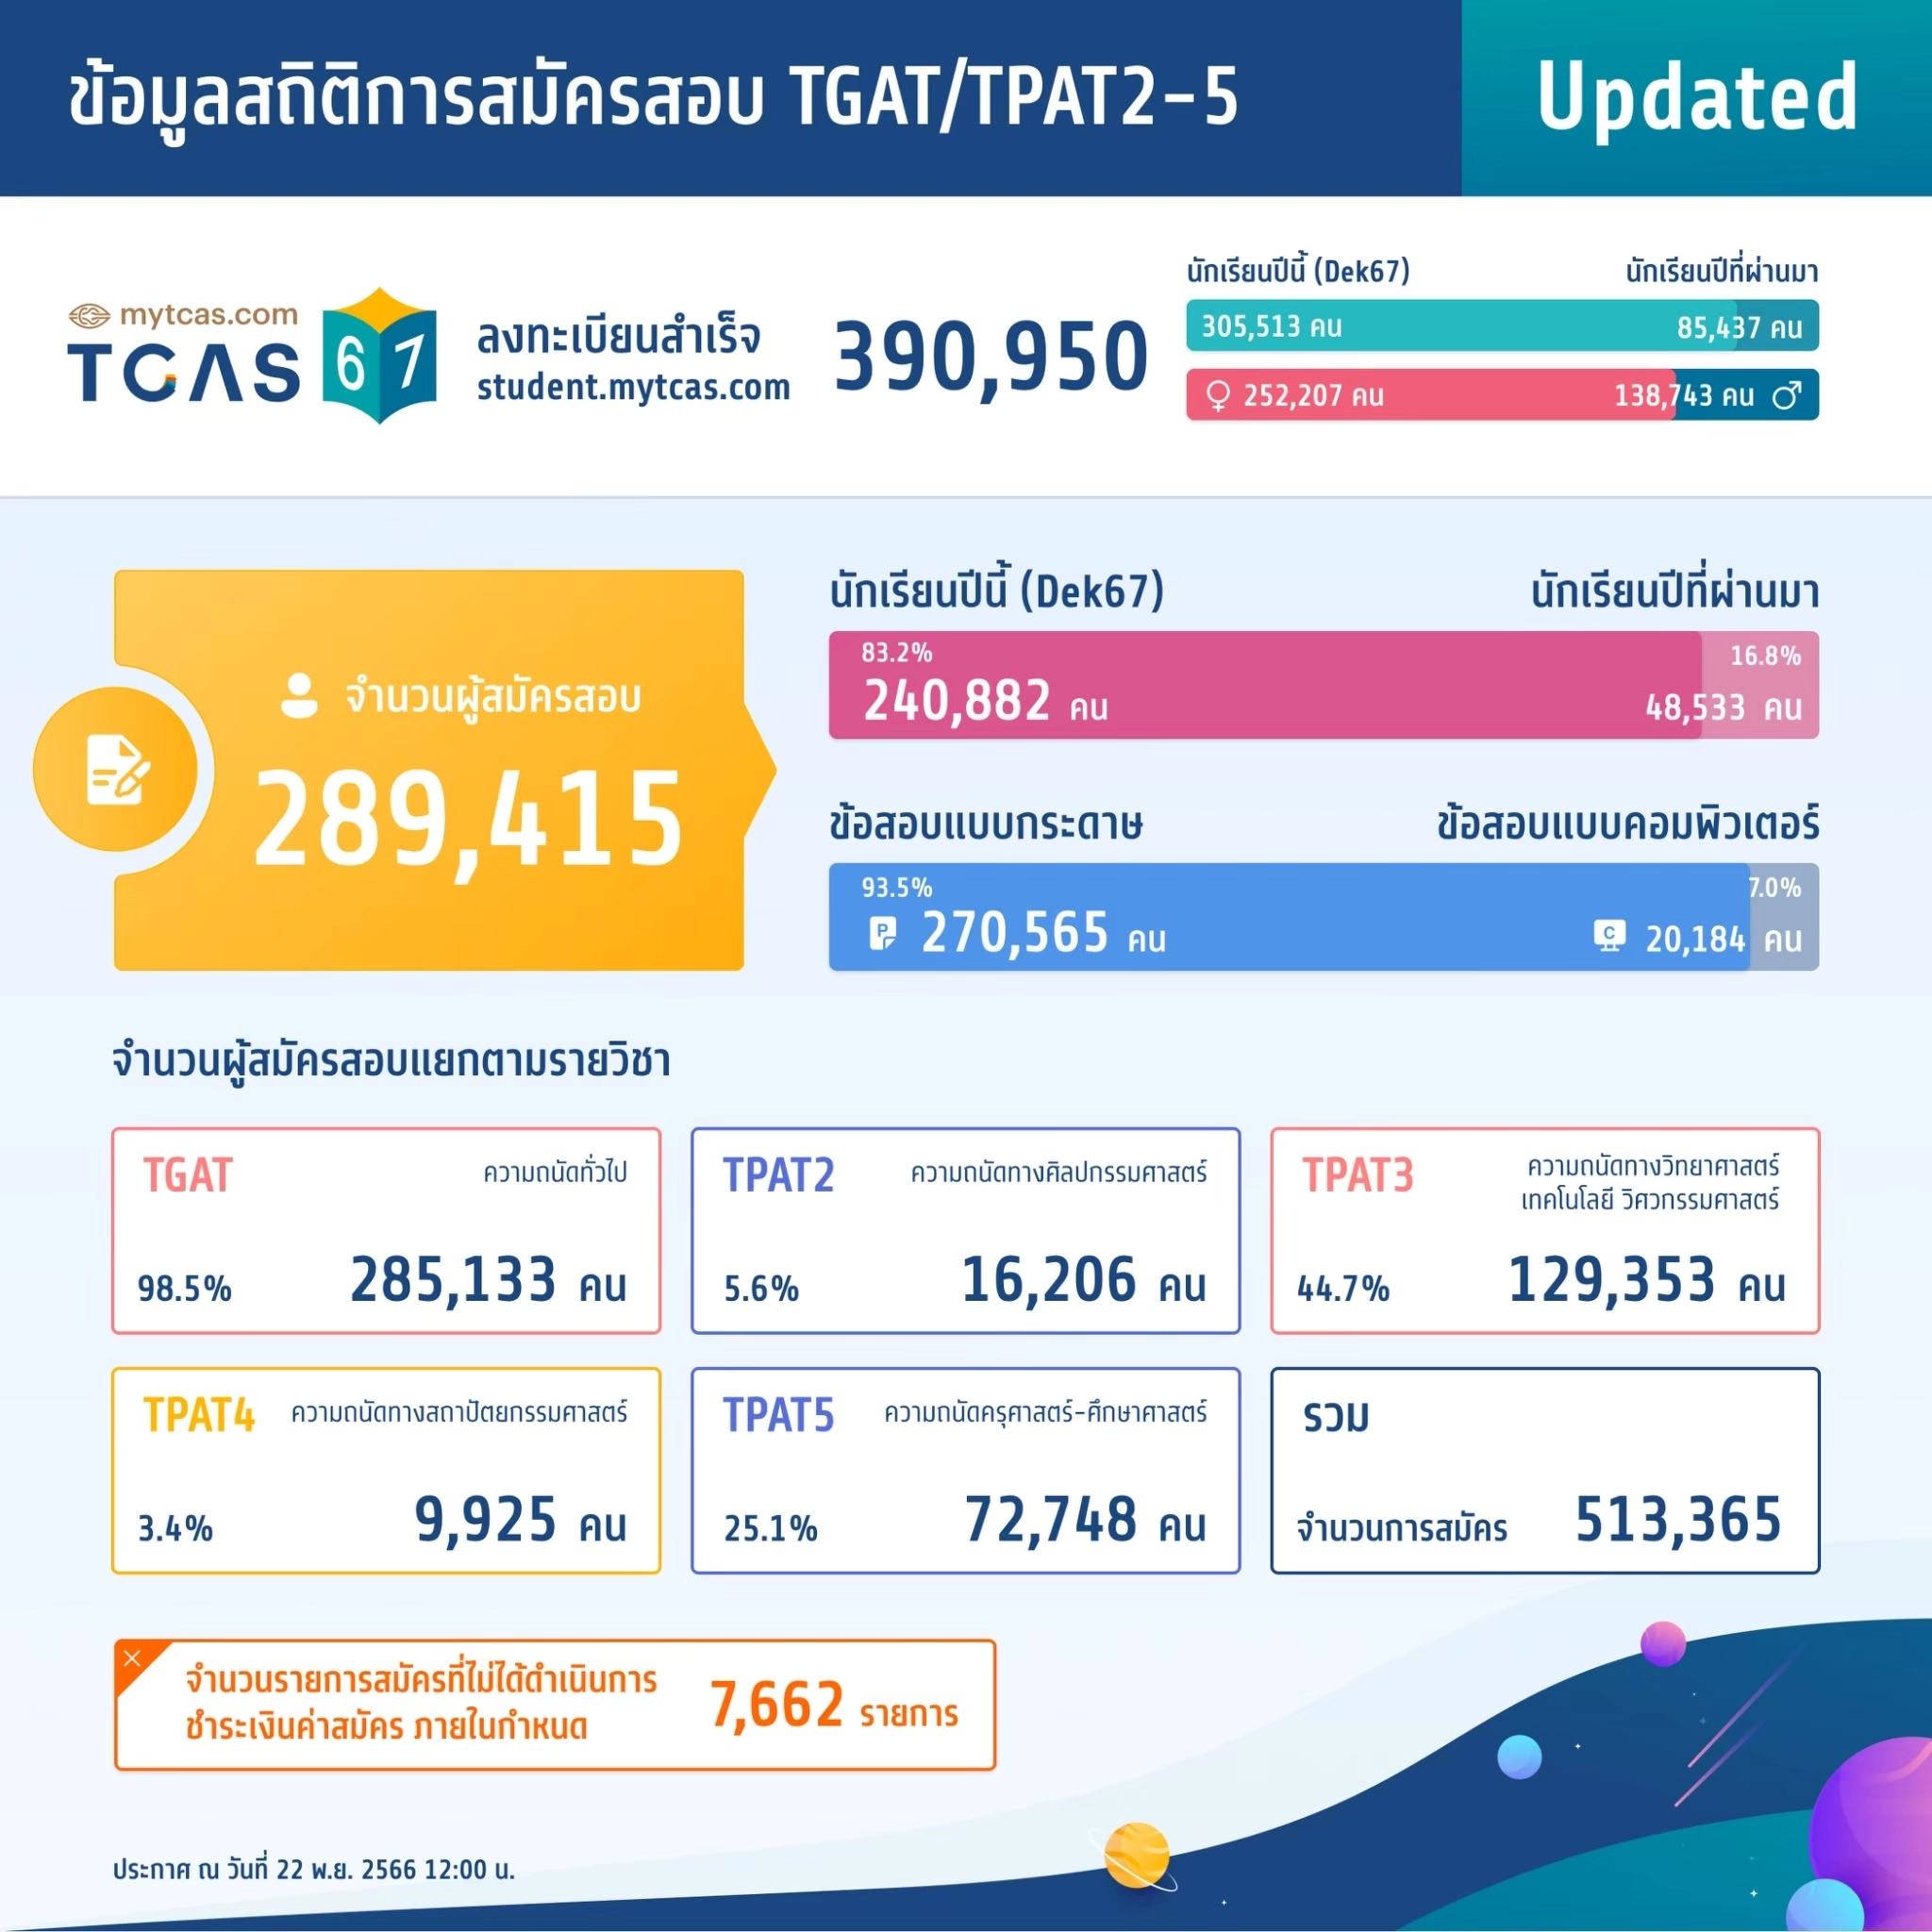 สถิติการสมัครสอบ TGAT/TPAT2-5